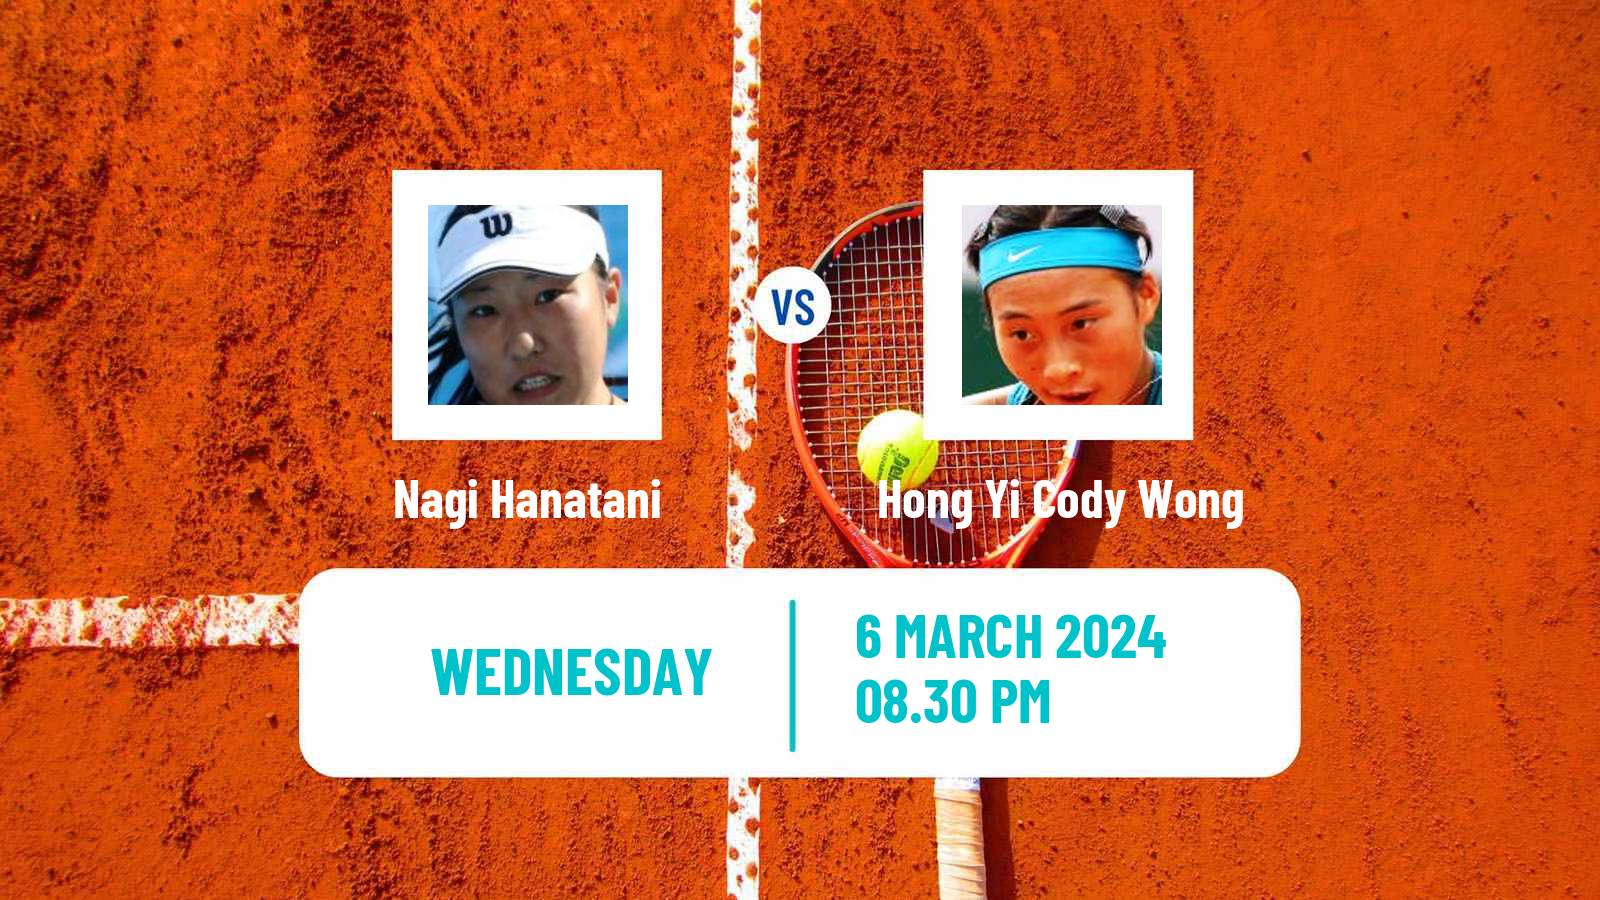 Tennis ITF W15 Kuala Lumpur Women Nagi Hanatani - Hong Yi Cody Wong